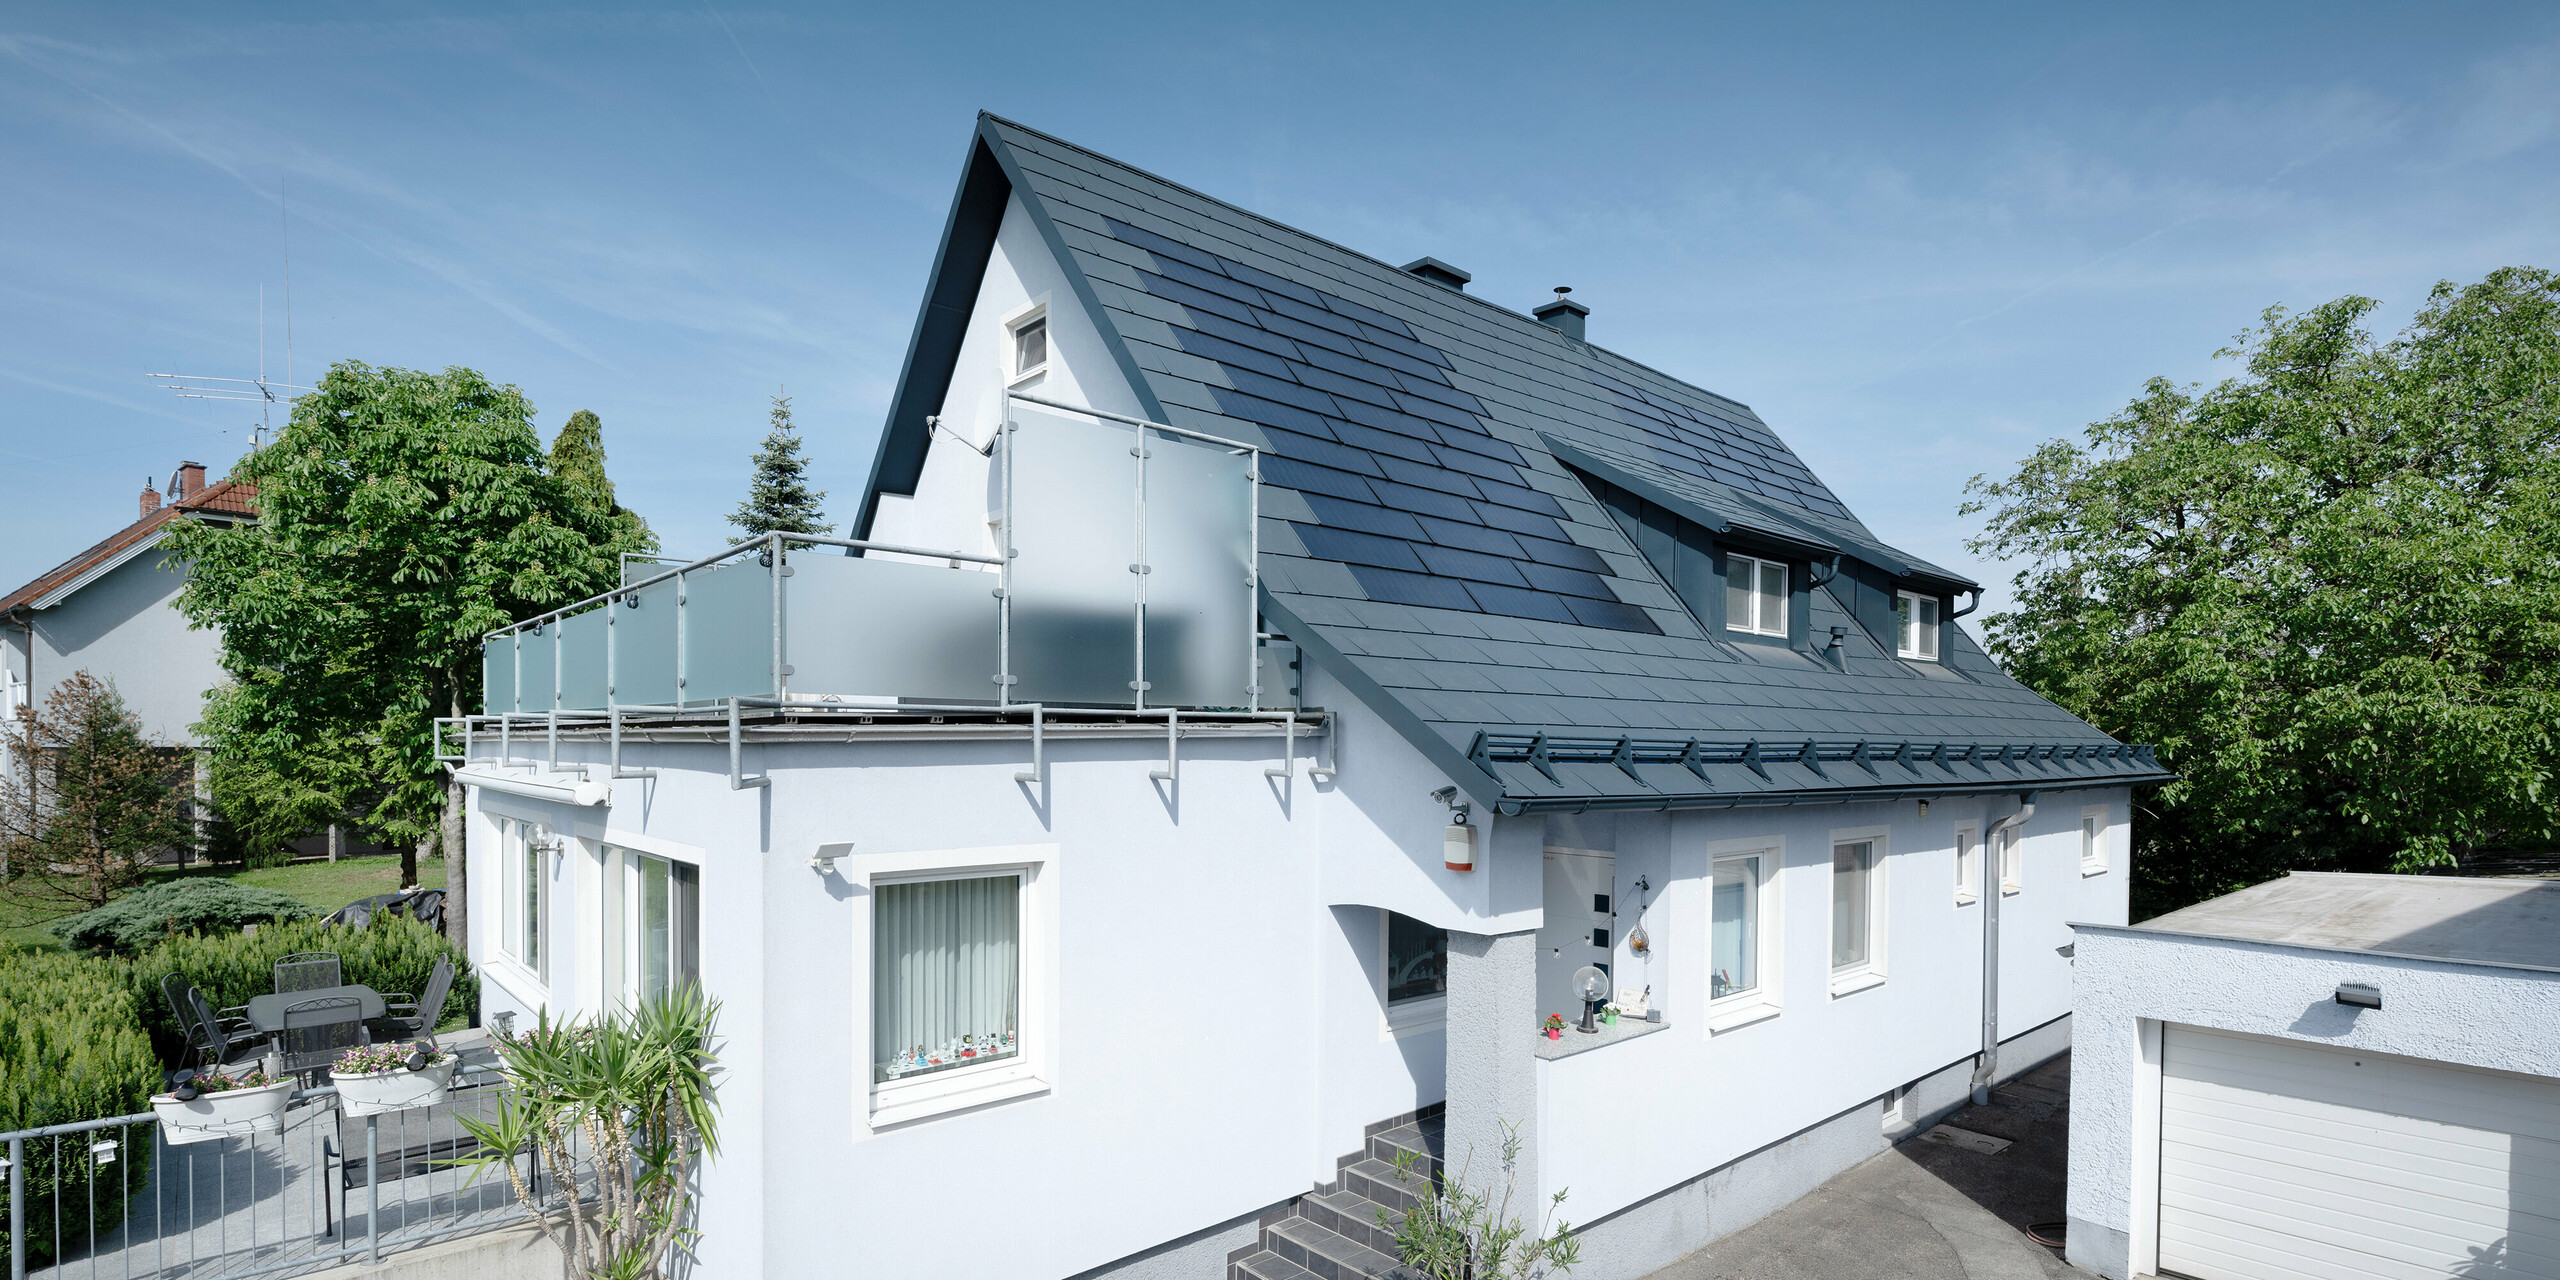 Dachsanierung eines Einfamilienhauses in Leonding mit PREFA Solardachplatten in Anthrazit. Das Bild zeigt das sanierte Haus aus einer seitlichen Perspektive mit klarer Sicht auf das Dach und die integrierten Solarmodule. Diese bieten eine nachhaltige und energieeffiziente Möglichkeit zur Stromerzeugung. Bei diesem Objekt erzeugen die Solardachplatten eine Stromleistung von 10,6 kWp. Die modernen, langlebigen und witterungsbeständigen PREFA Materialien tragen zu einer ästhetischen und funktionalen Dachkonstruktion bei, die den neuesten Standards für nachhaltiges Bauen entspricht.